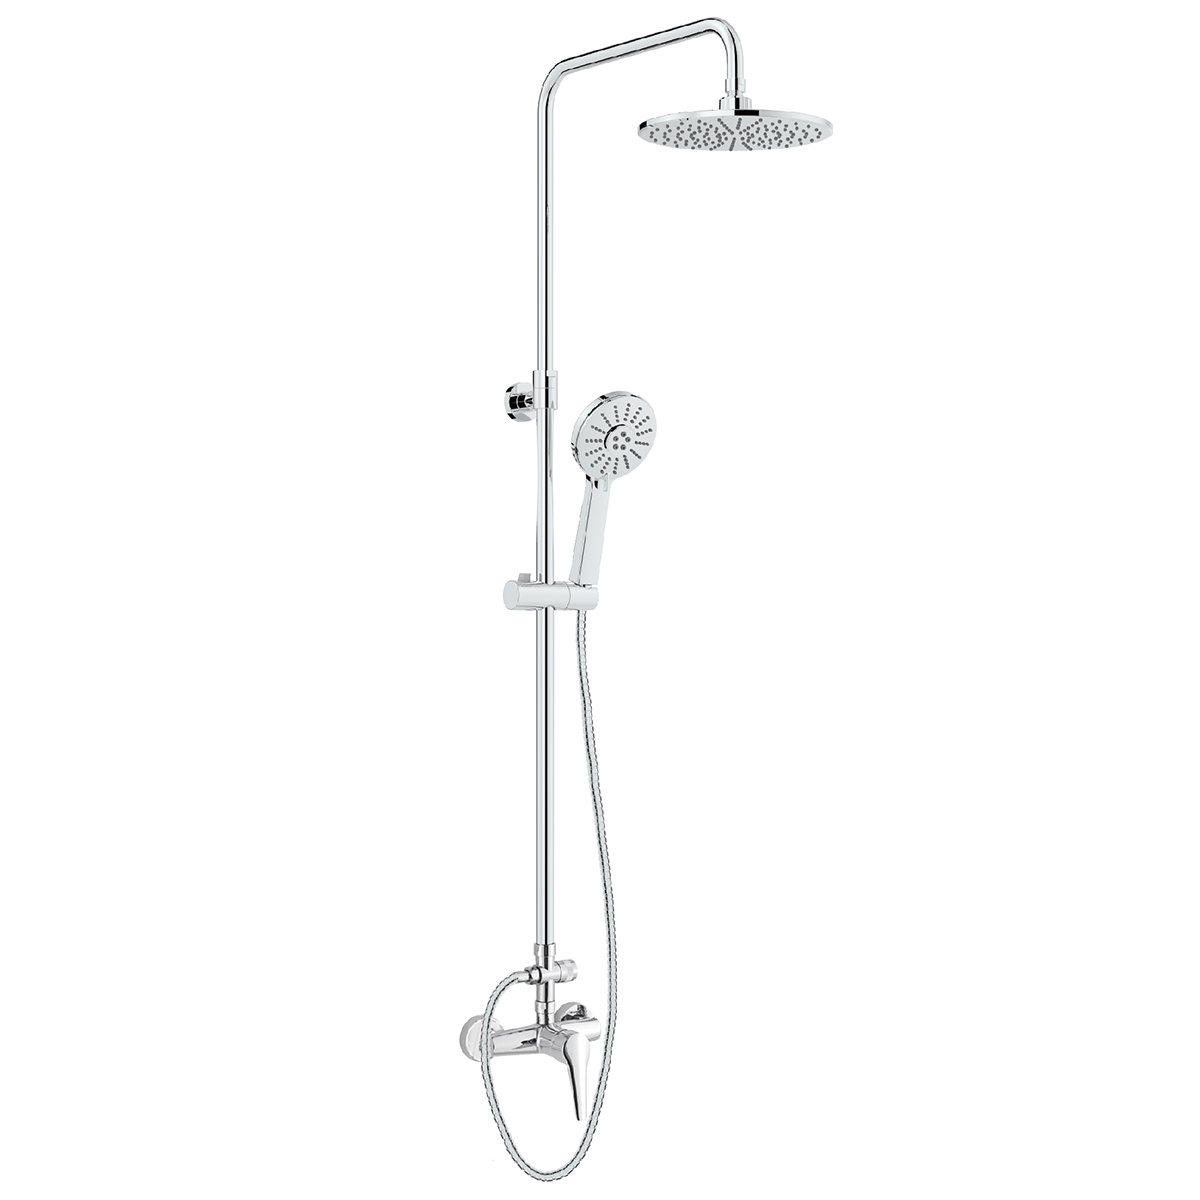 Shower fixtures L1401 shower column